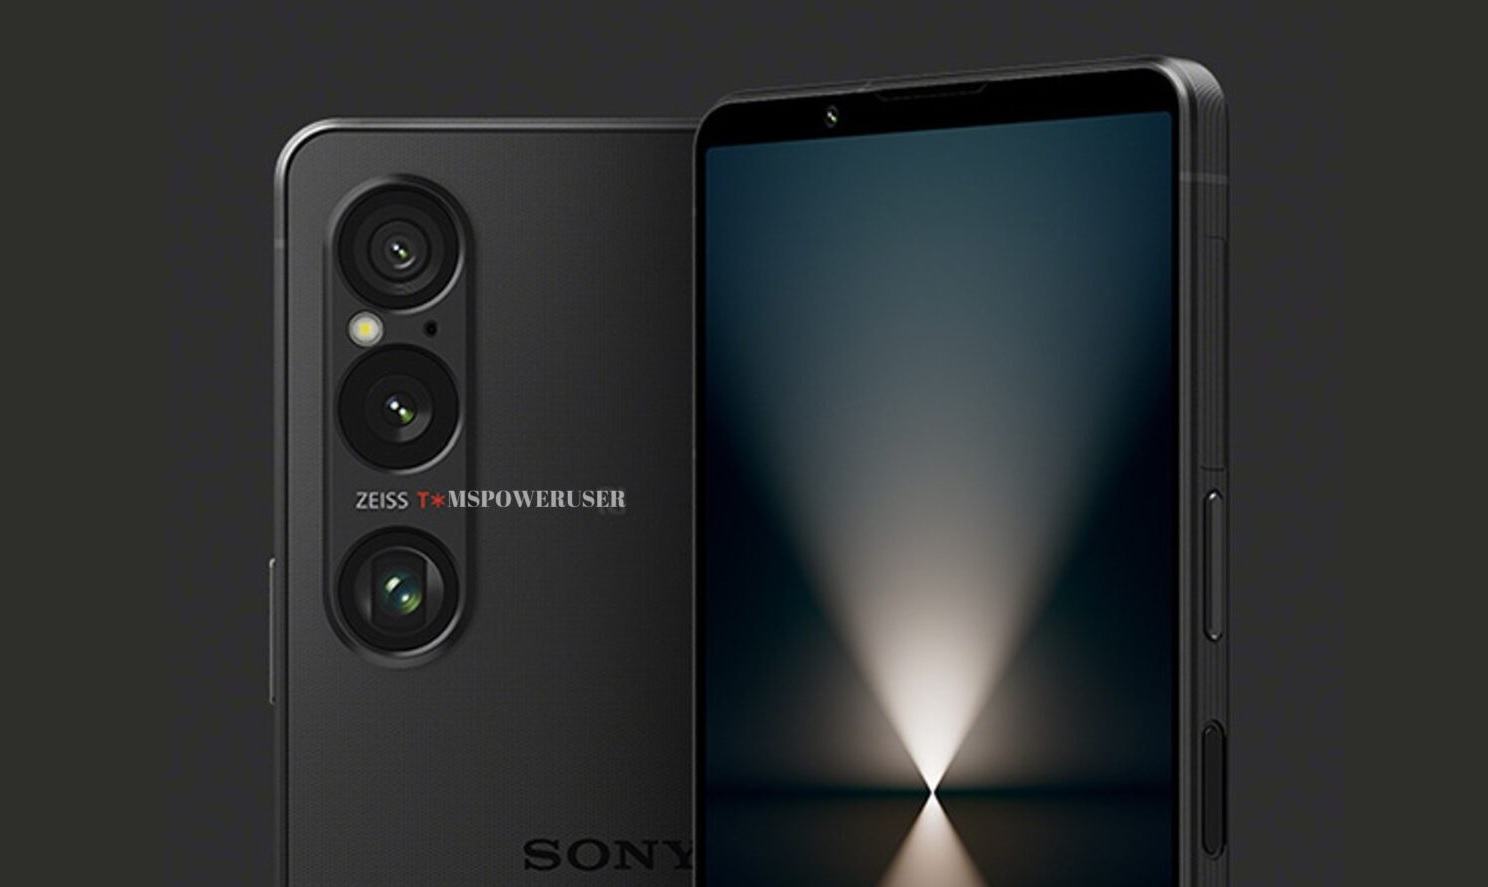 Nueva información sobre el teléfono Sony Xperia 1 VI, se han revelado muchos detalles nuevos